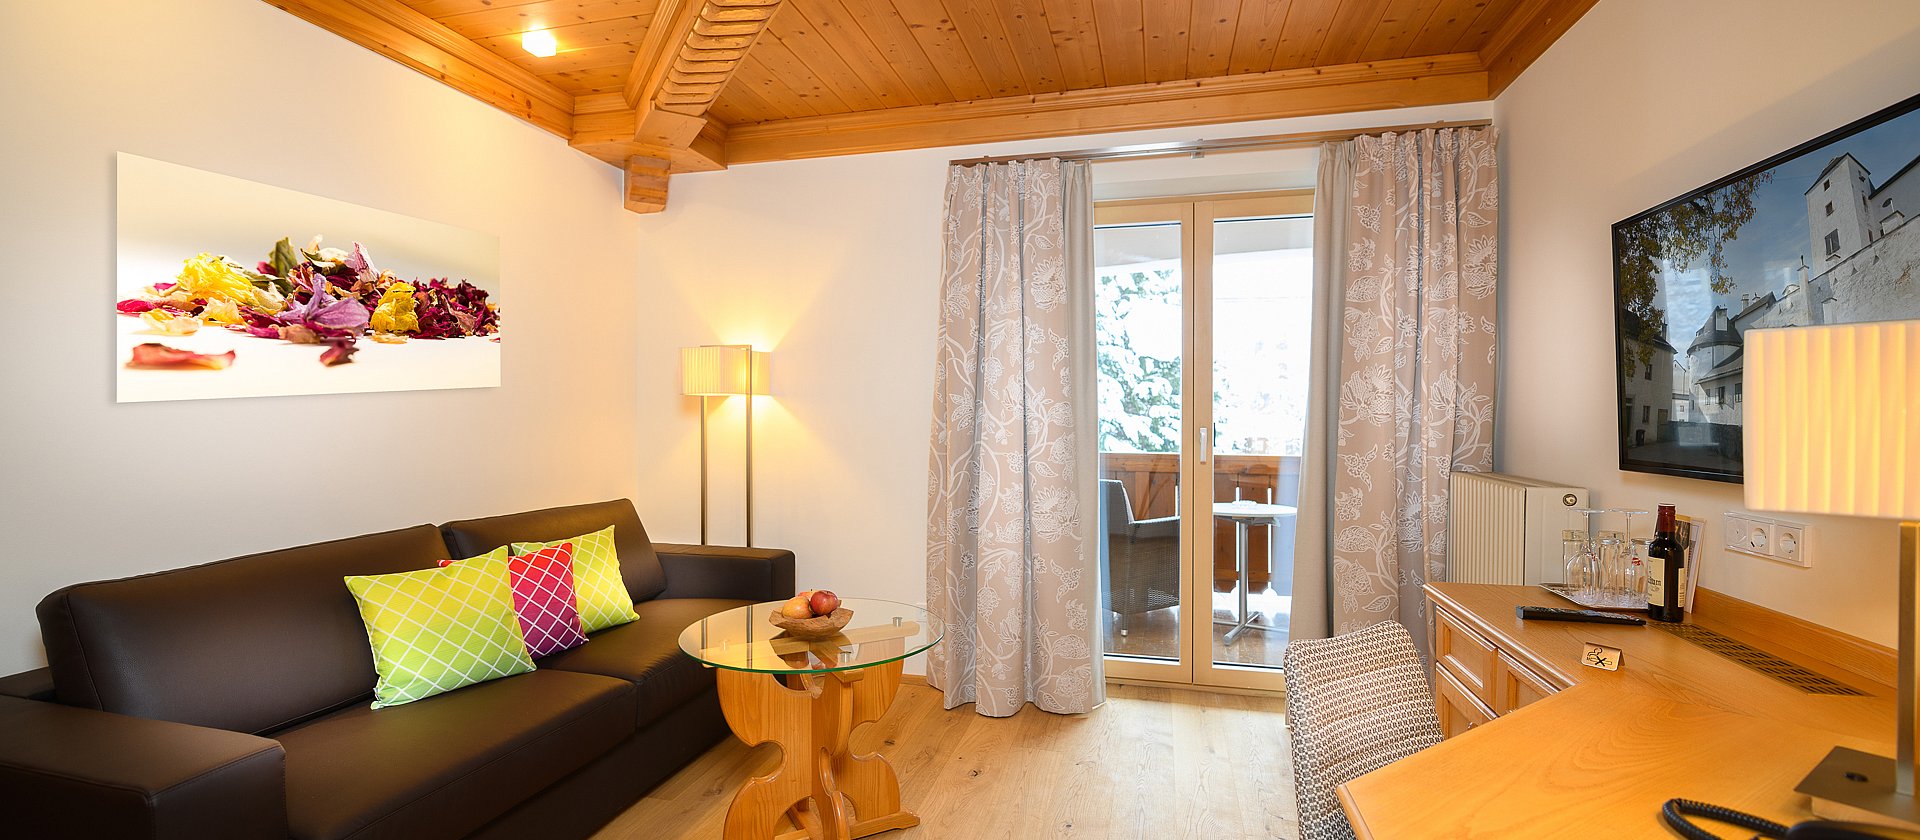 Wohnbereich in der Berghof Suite in St. Johann im Pongau